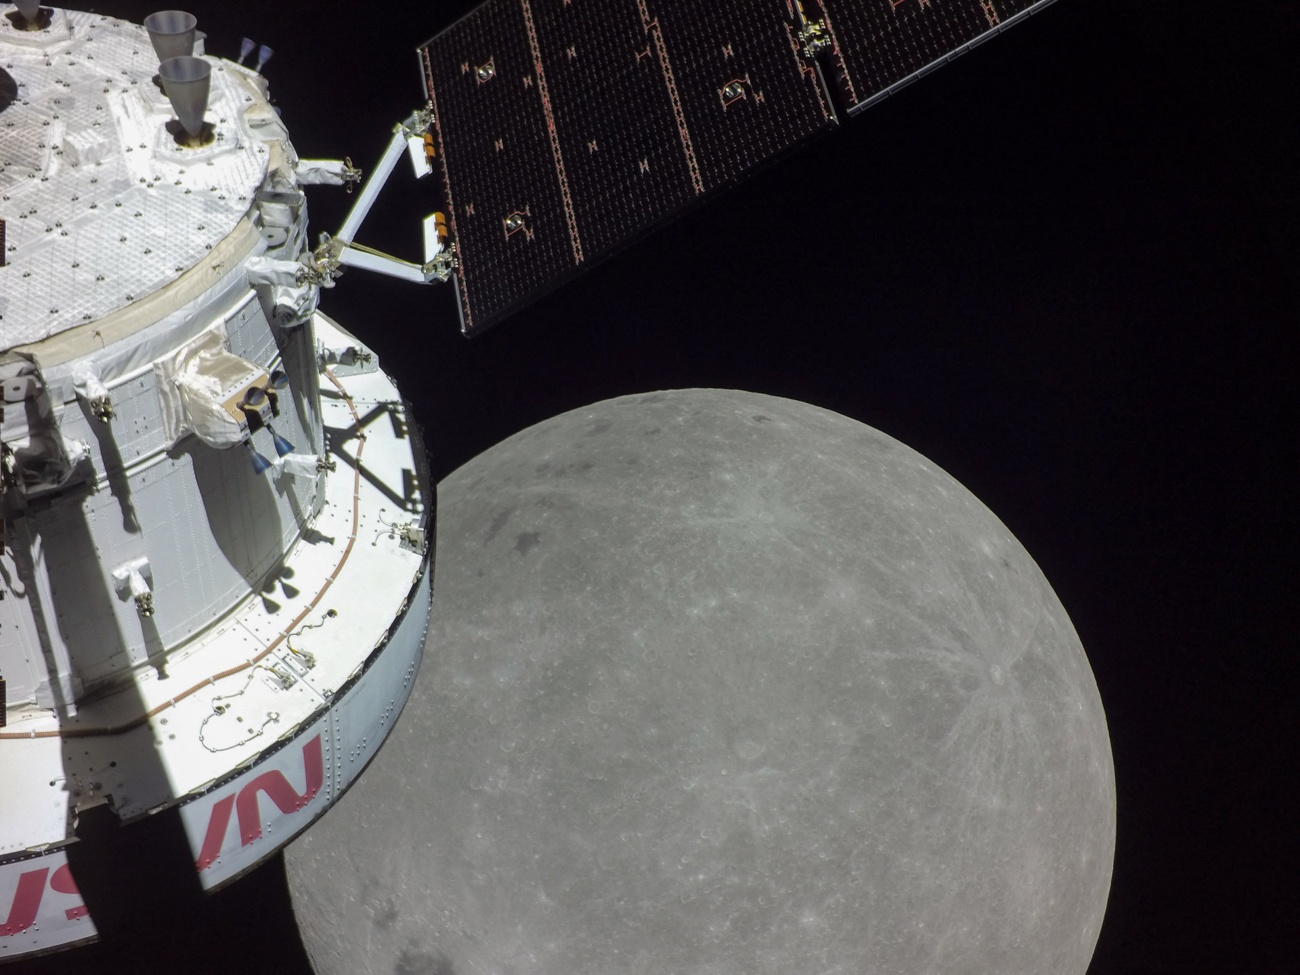 Aproximación de la nave Orion a la inserción orbital lunar